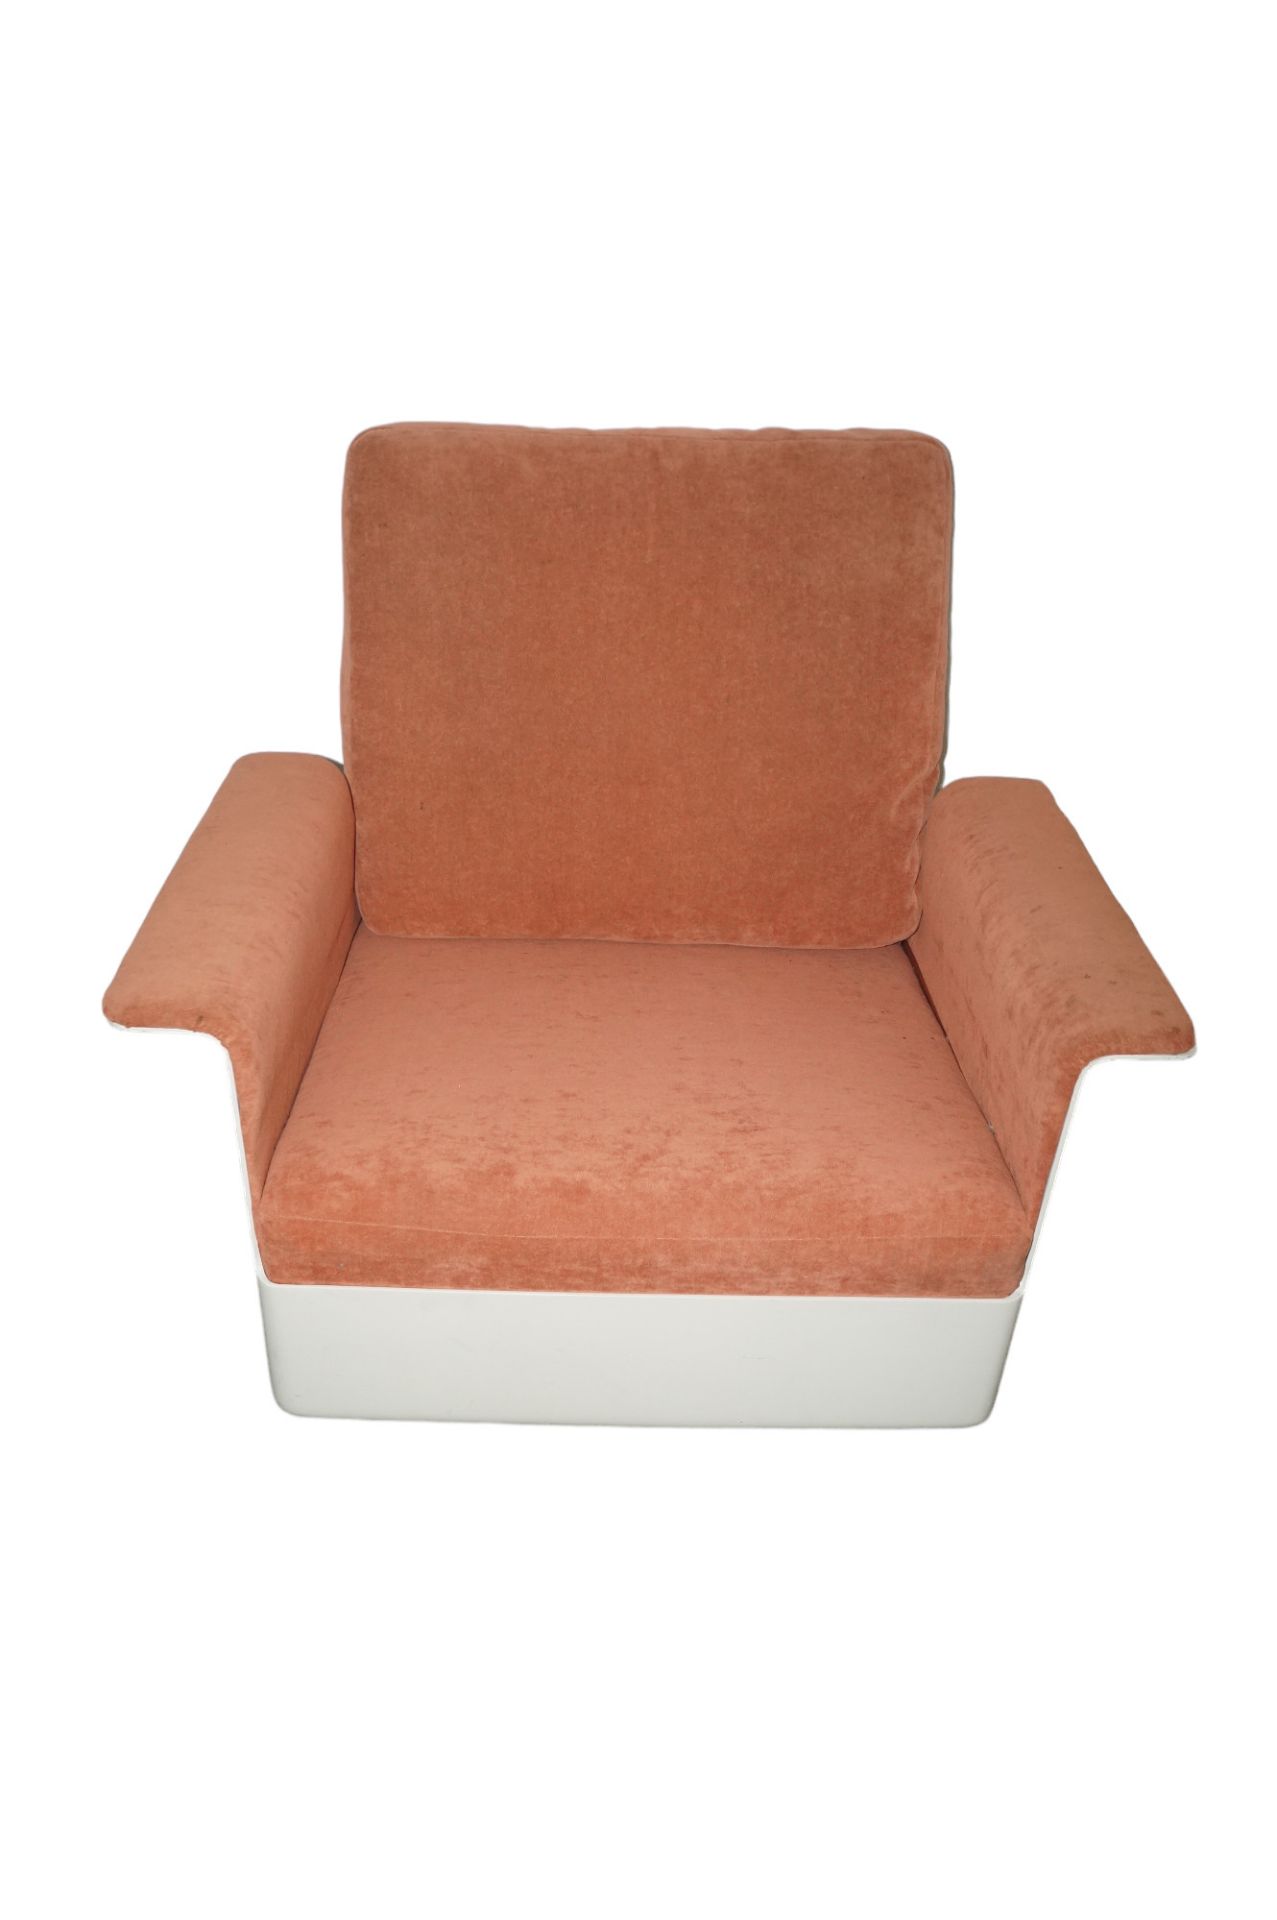 Designer Couch-Garnitur aus Glasfaserschalen mit eingelegten Polsterelementen; ein 3-Sitzer sowie d - Bild 3 aus 5